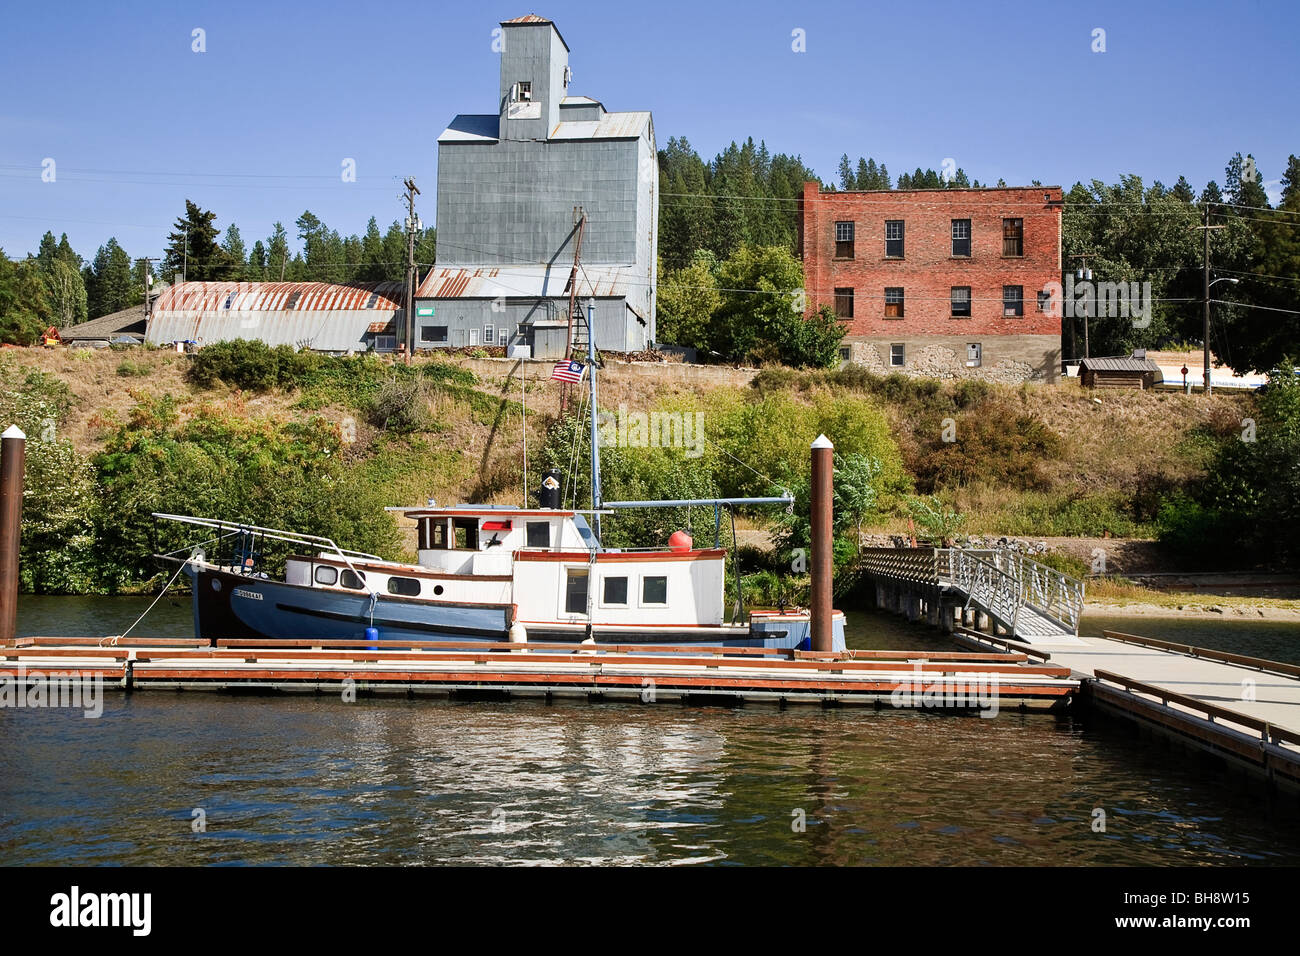 Élévateur à grain, vieux bâtiment en brique rouge et le bateau amarré au port de plaisance sur le lac de Cœur d'Alene, Harrison, New York, USA Banque D'Images